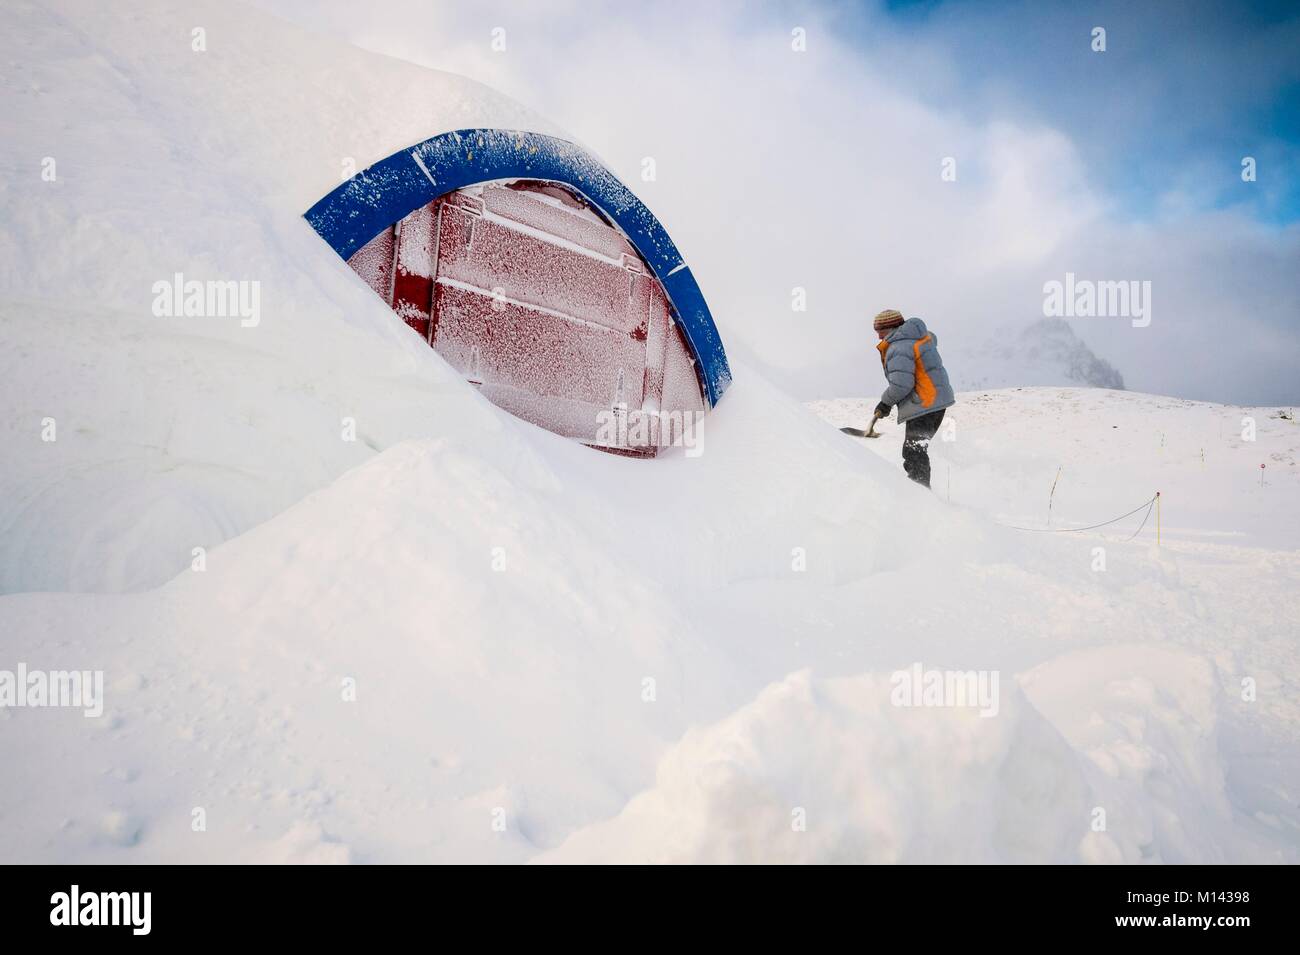 France, Savoie, Tarentaise, massif de la Vanoise, station de ski des Arcs 2000, Bruno GARDENT, guide de montagne et créateur de structures gonflables préfigurant les volumes de l'igloo village, supervise sa construction durant la saison d'hiver 2017-2018 Banque D'Images